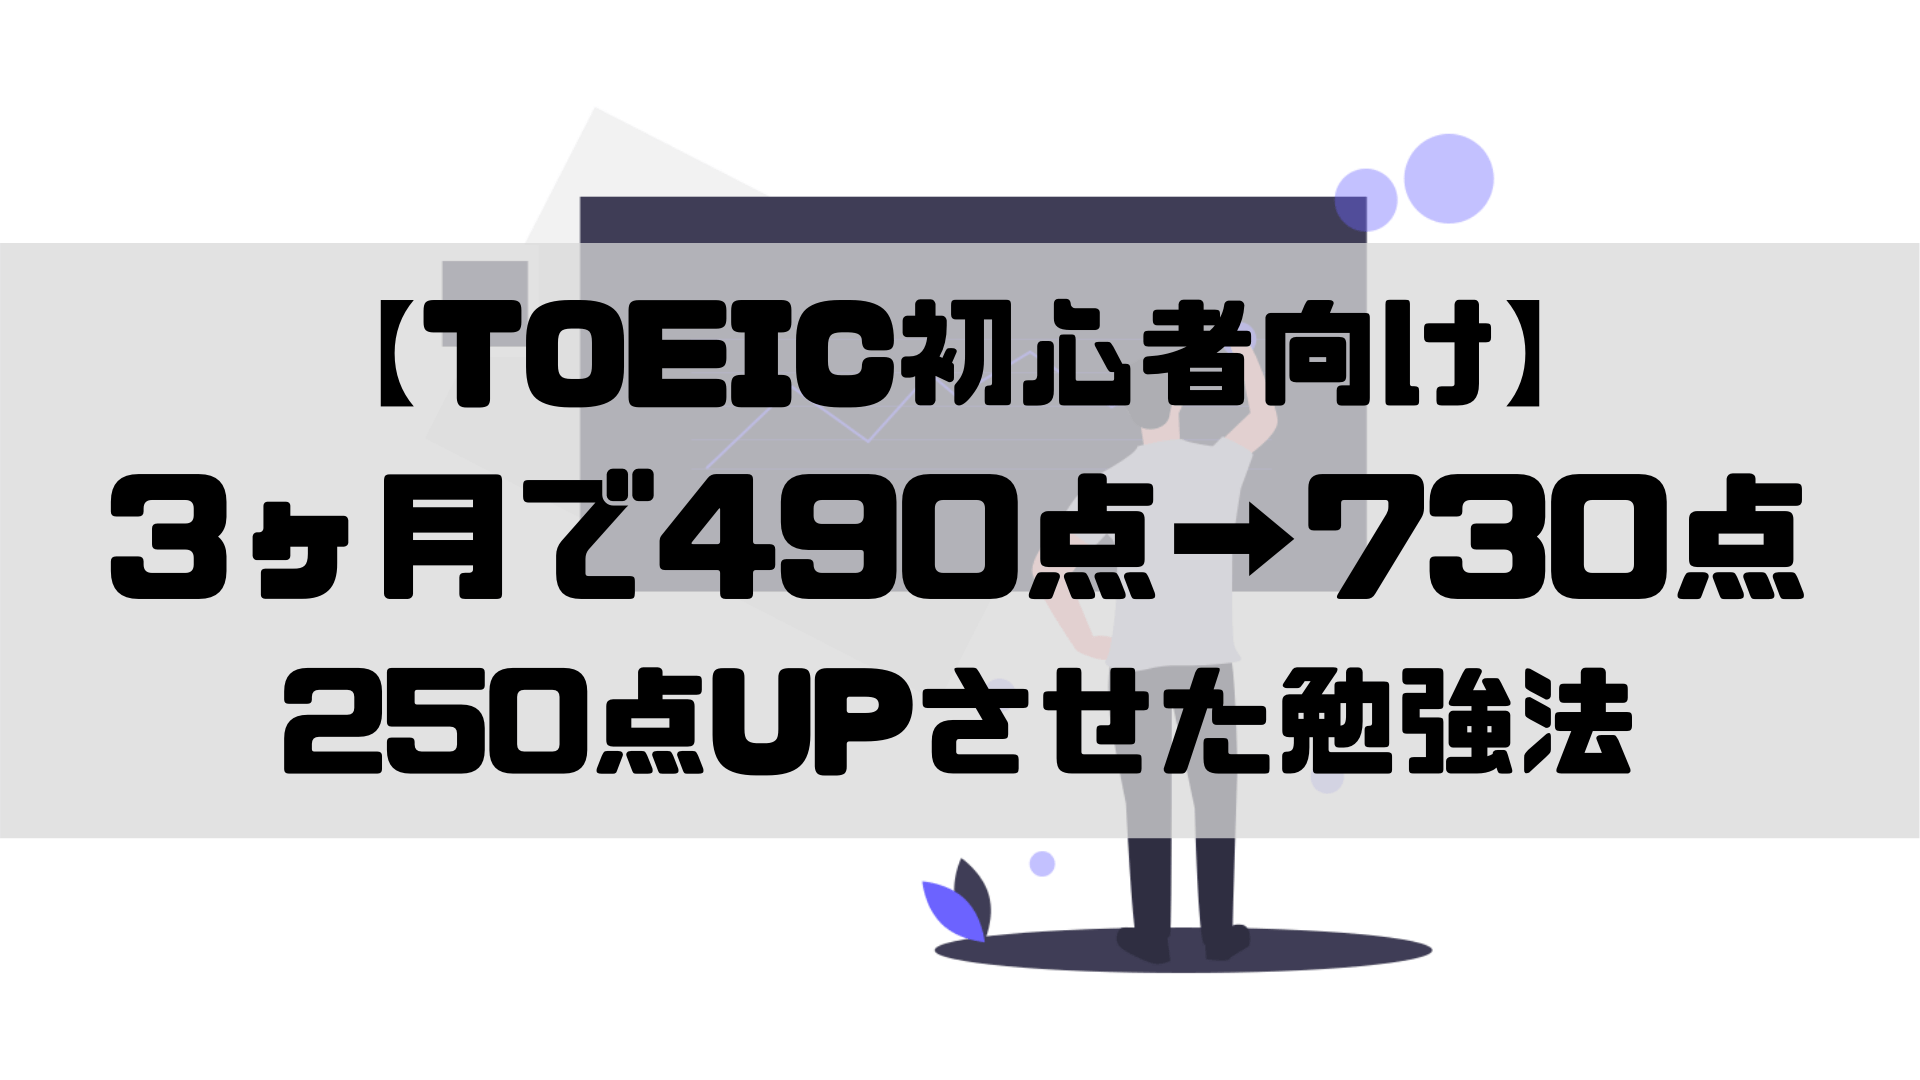 Toeic初心者向け 3ヶ月で490点 730点 250点upさせた勉強法 キャリアナビ